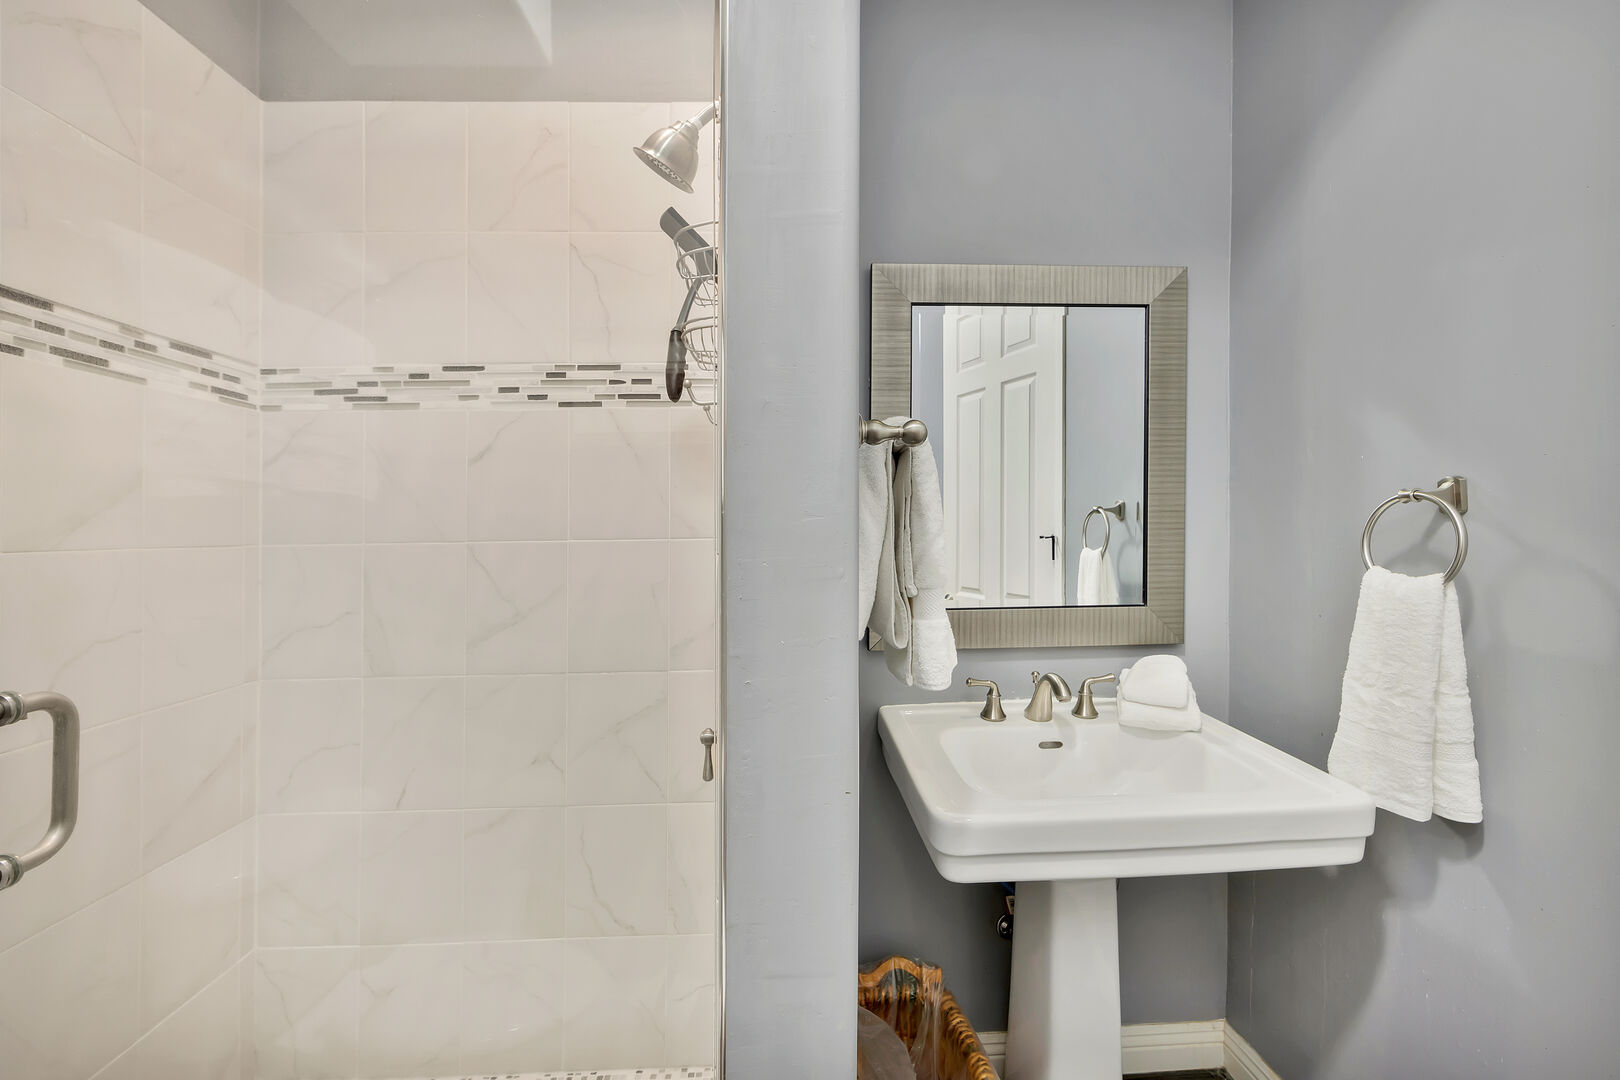 Casita Suite 3 private, en suite bathroom features a tile shower and a pedestal sink.